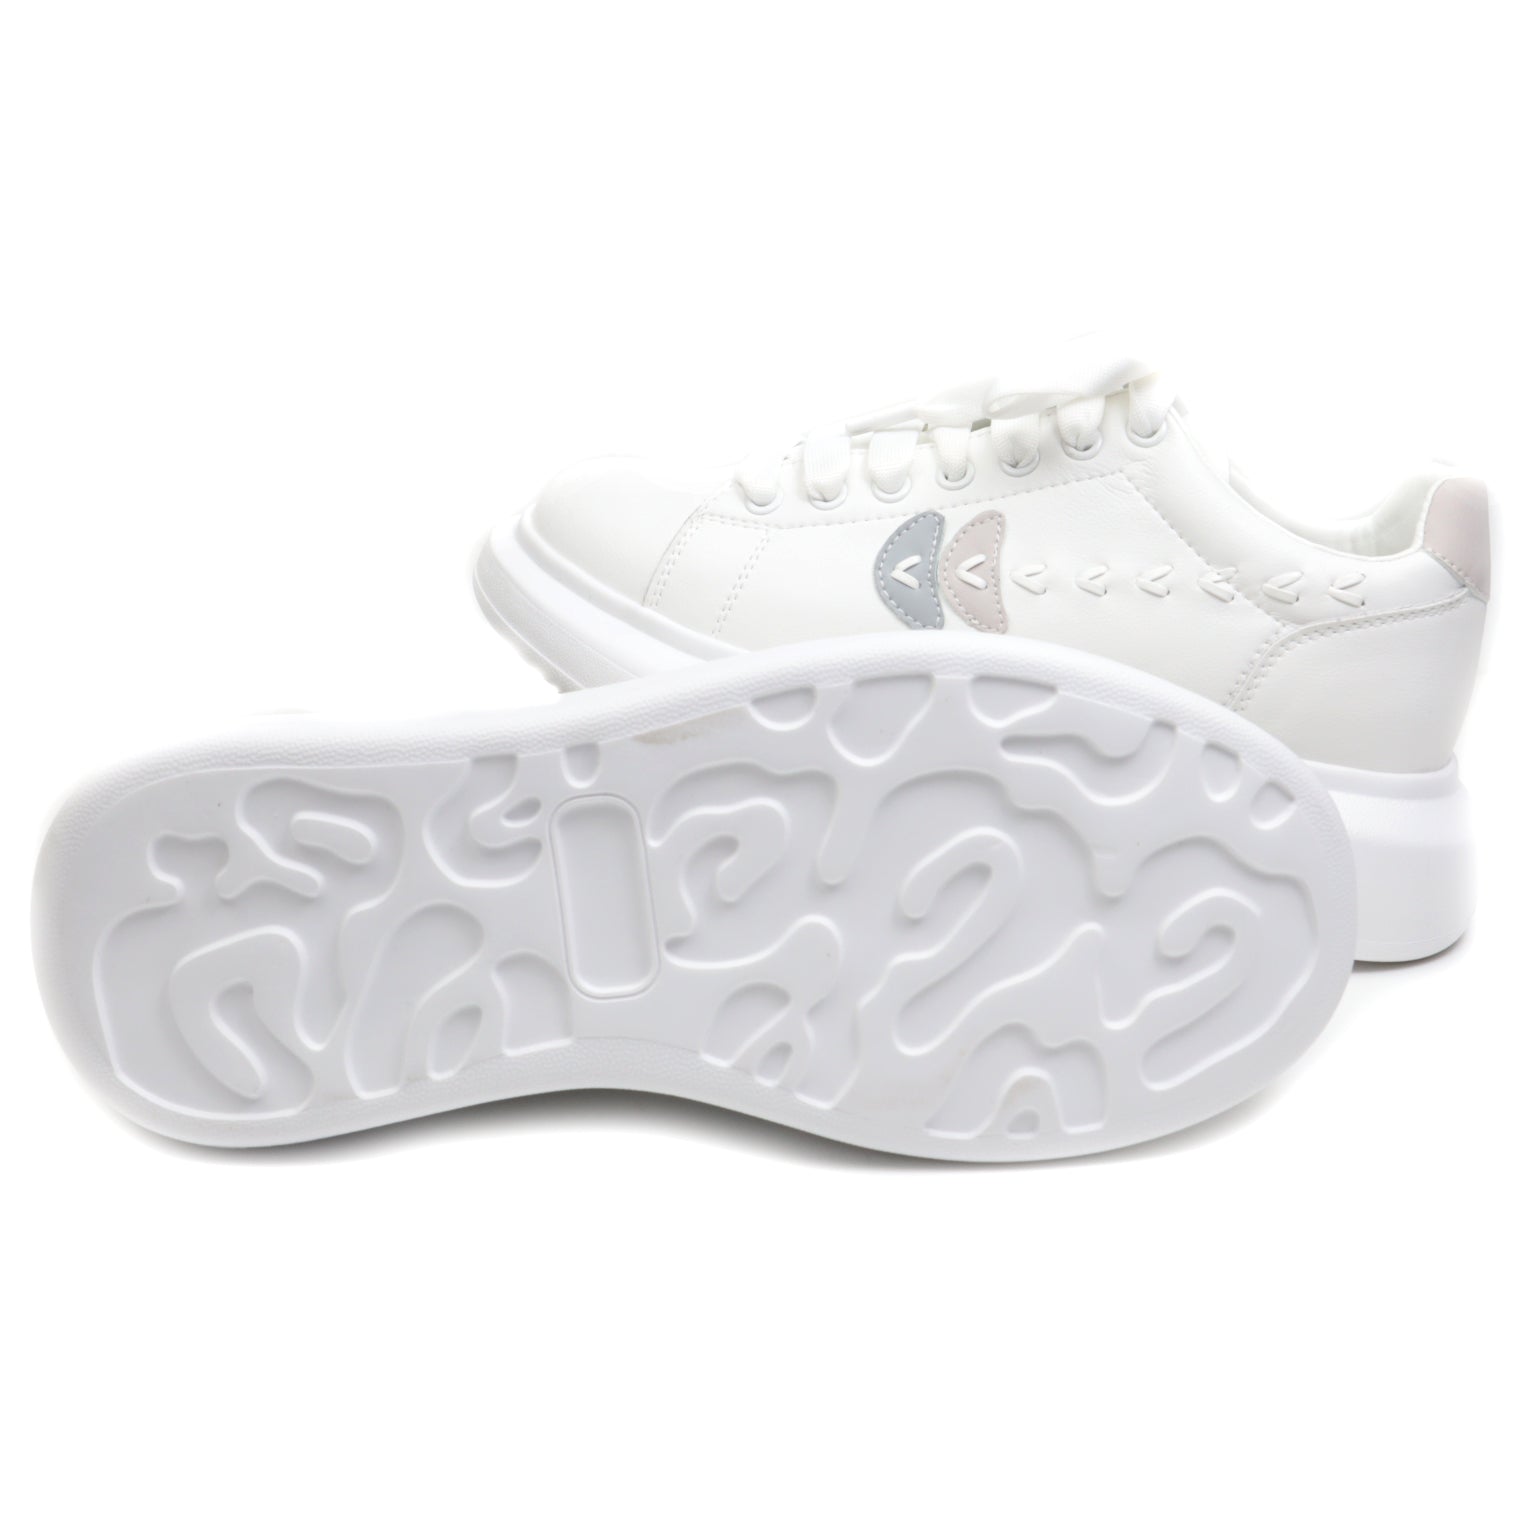 Franco Gerardo Sneakers dama 2A515 WHITE/GREY ID3880-WGREY